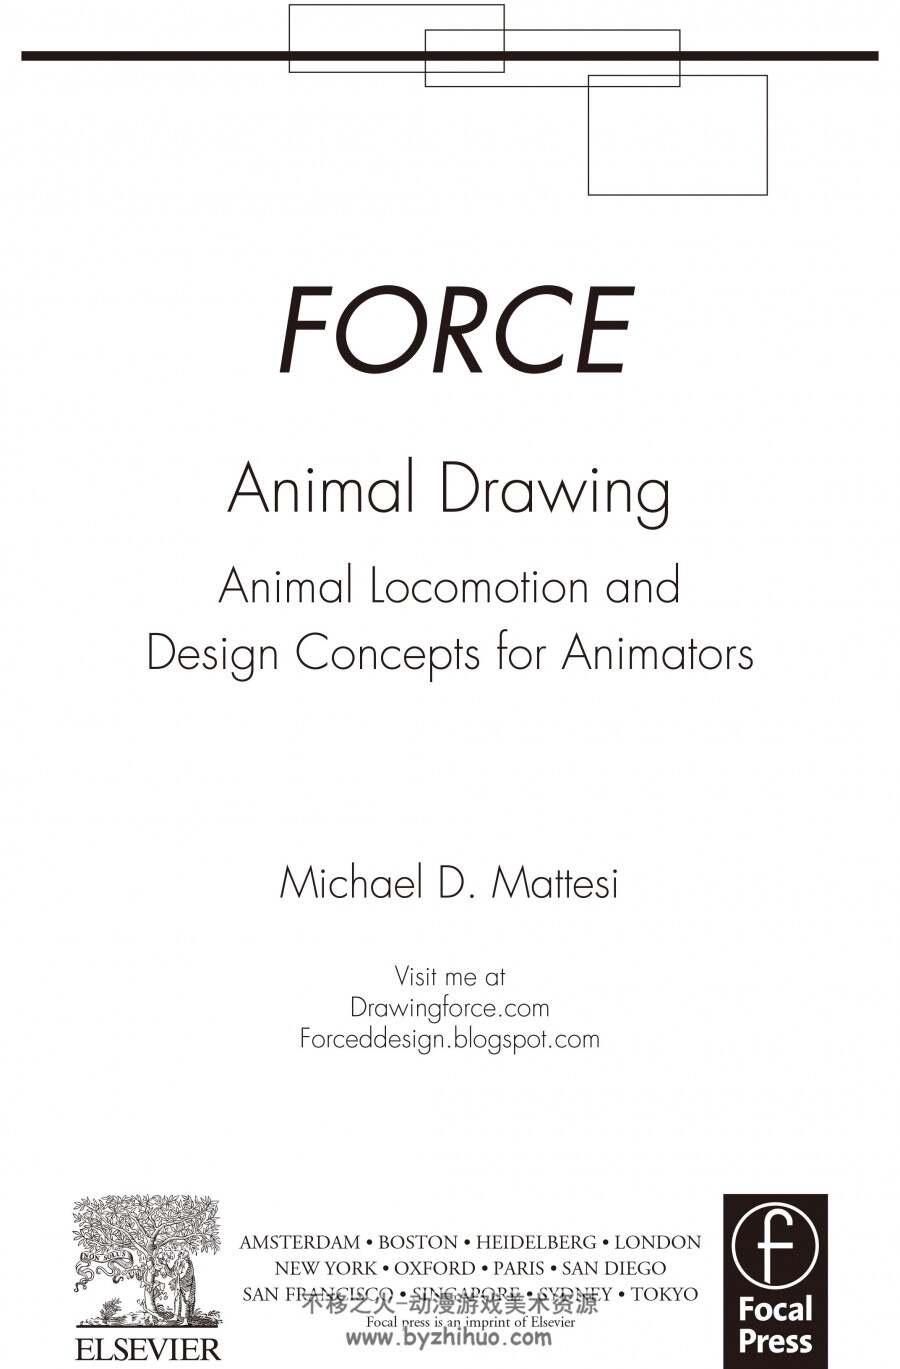 FORCE动物解剖手稿集 双格式 百度网盘下载参考